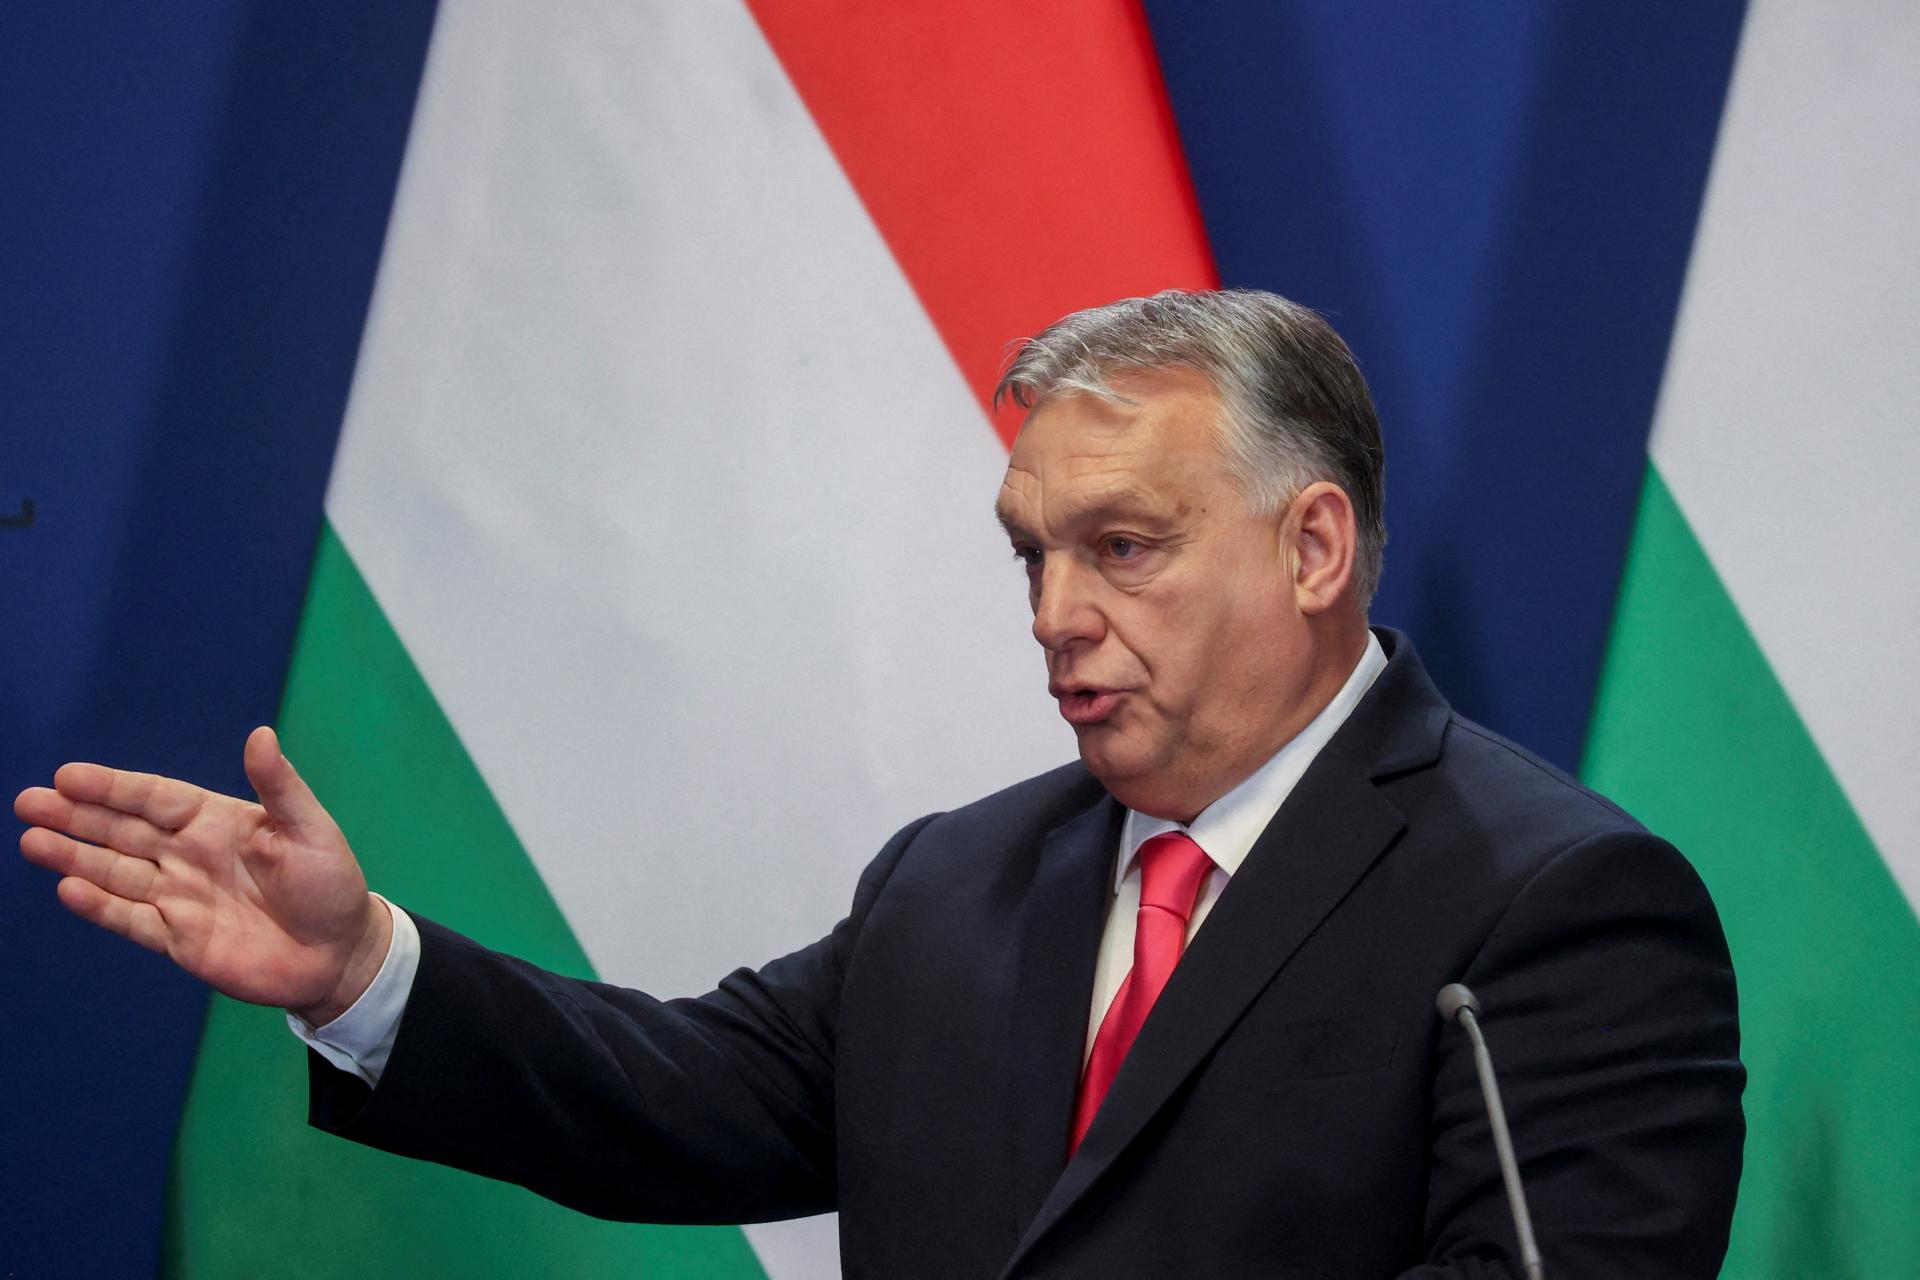 Po prezidentke musí prevziať zodpovednosť aj Orbán, vyzvali maďarskí socialisti